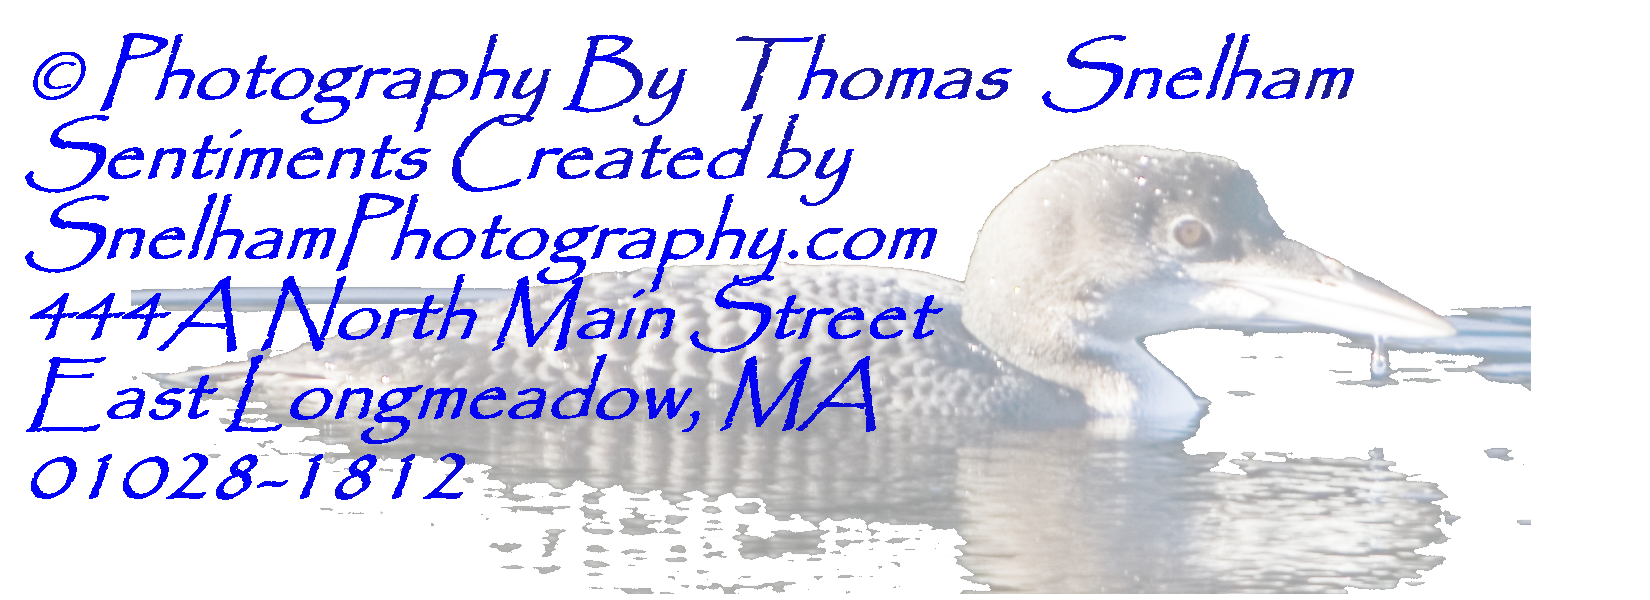 Click here to Go to Snelham Photography.com